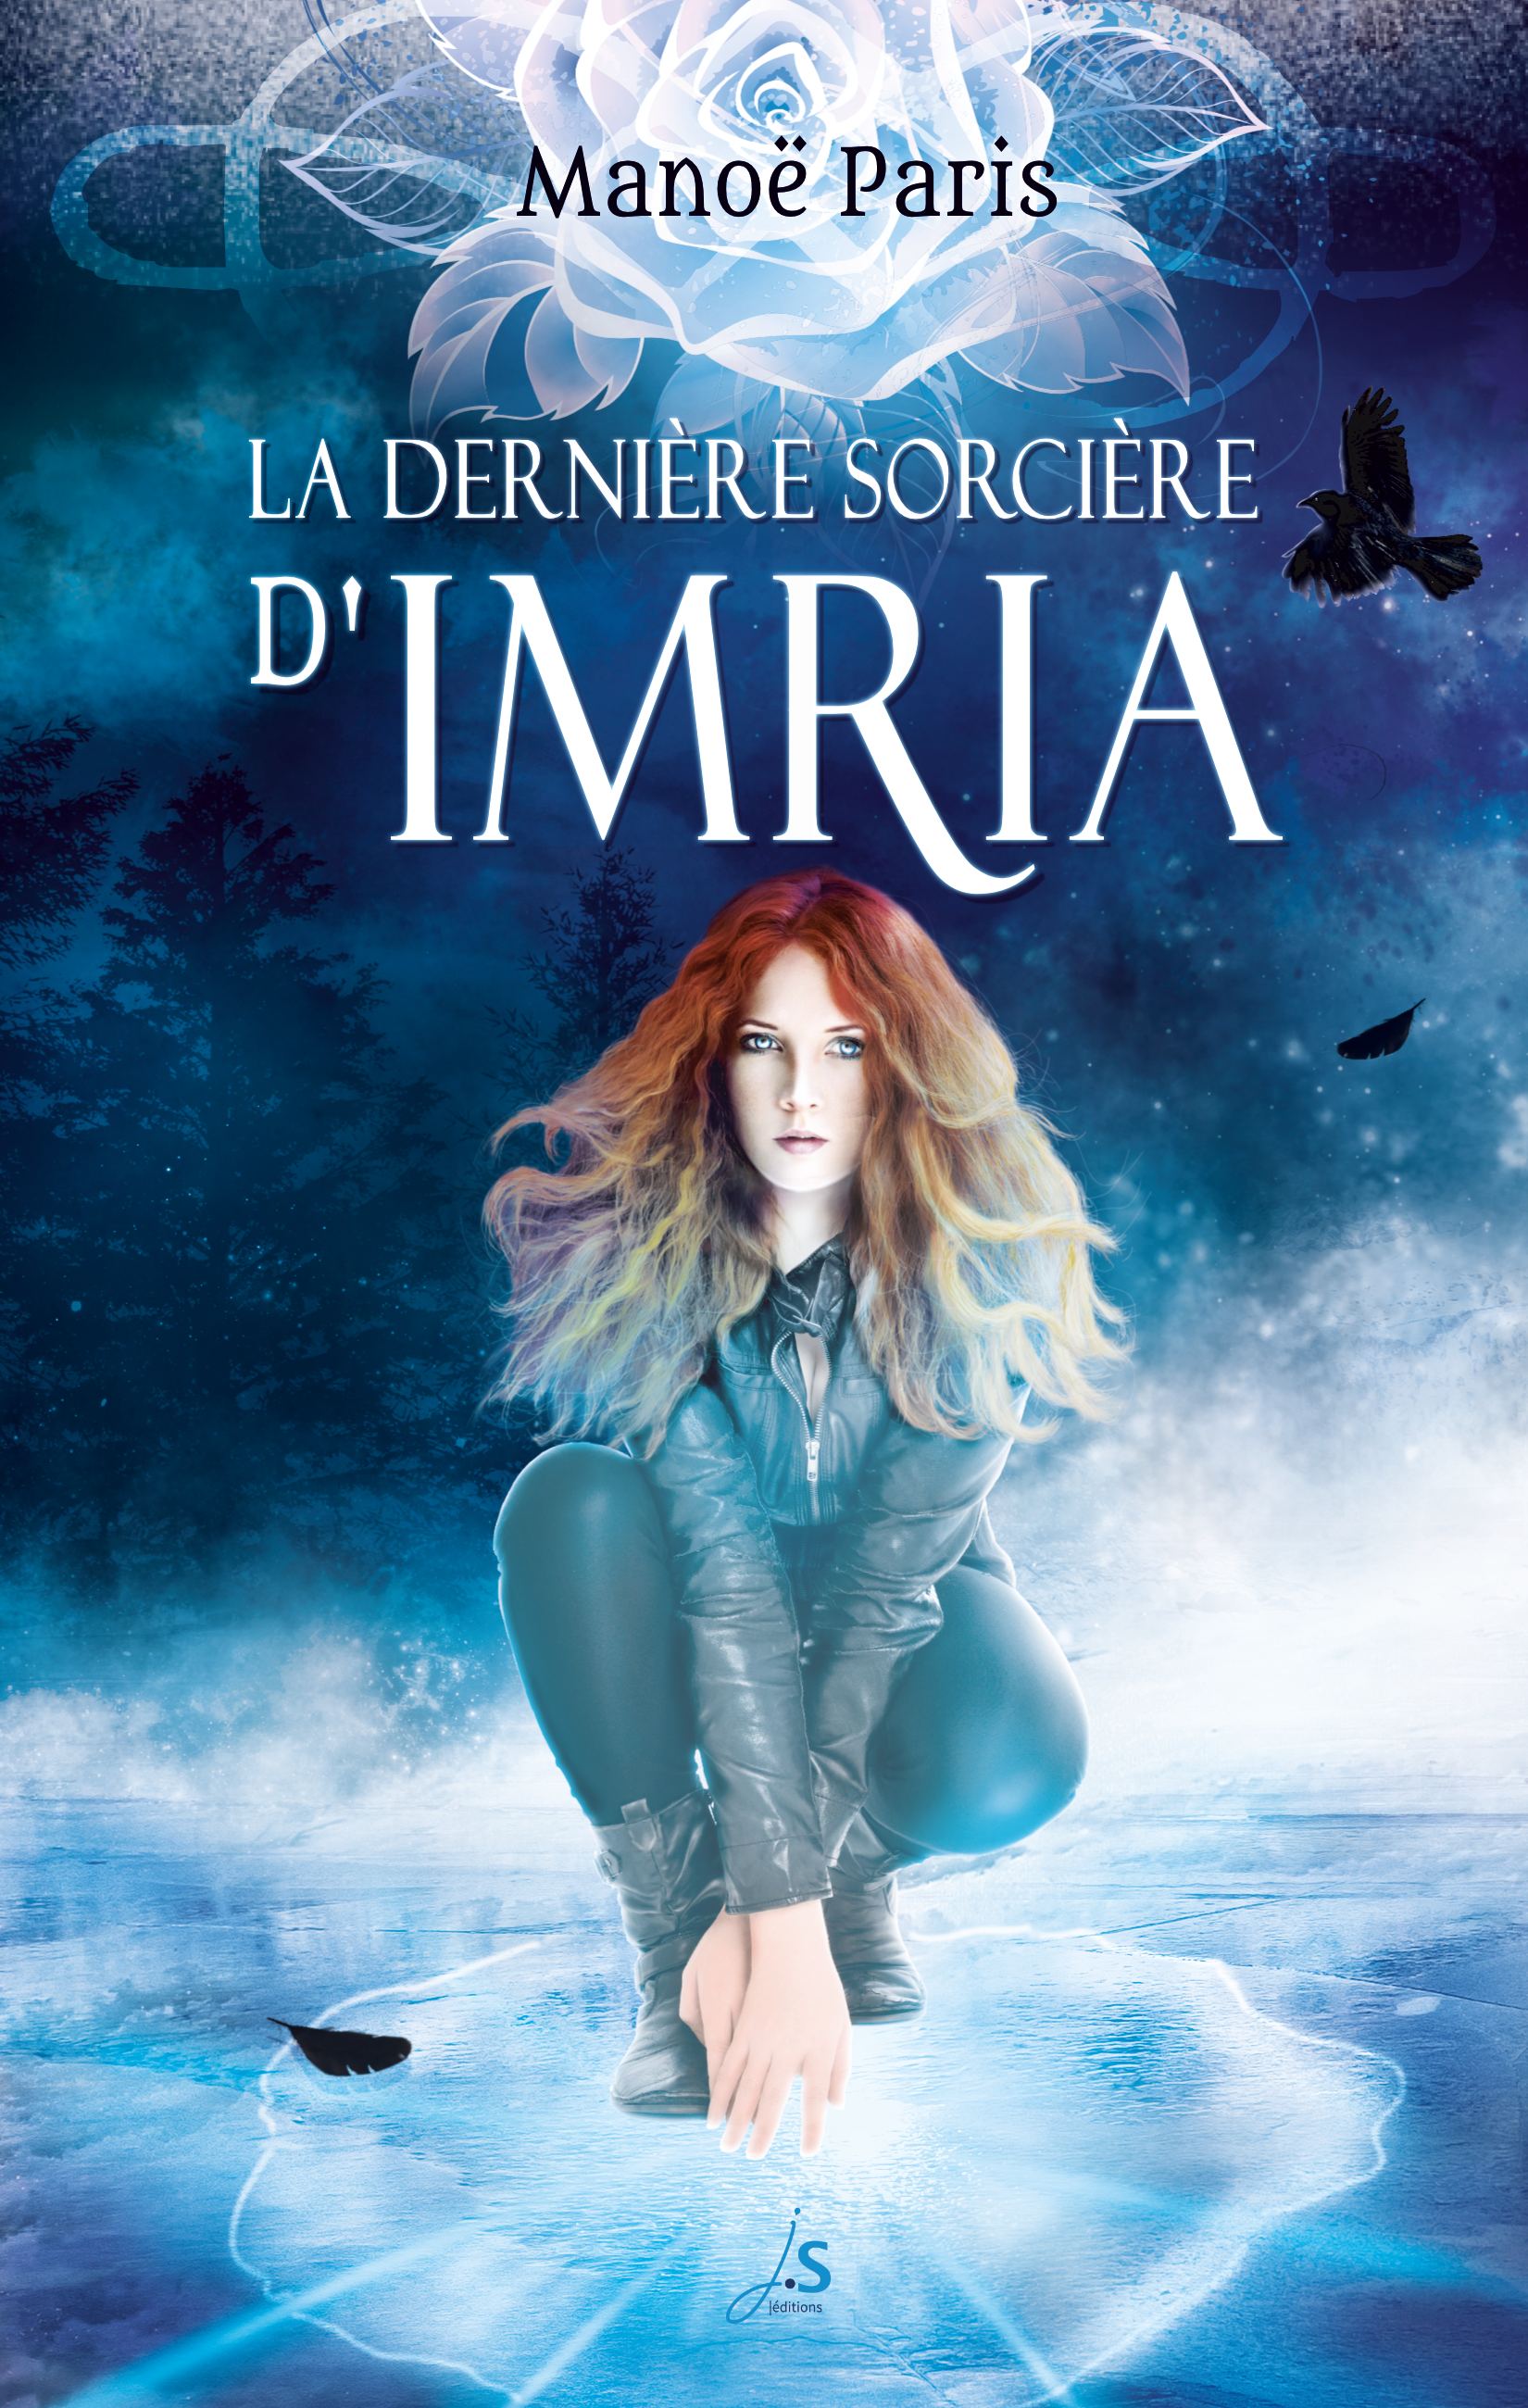 Couverture du roman de Manoë Paris : la dernière sorcière d'Imria. Sur un fond bleu, une femme moderne accroupie sur un sol qui se glace sous l'effet de ses doigts.